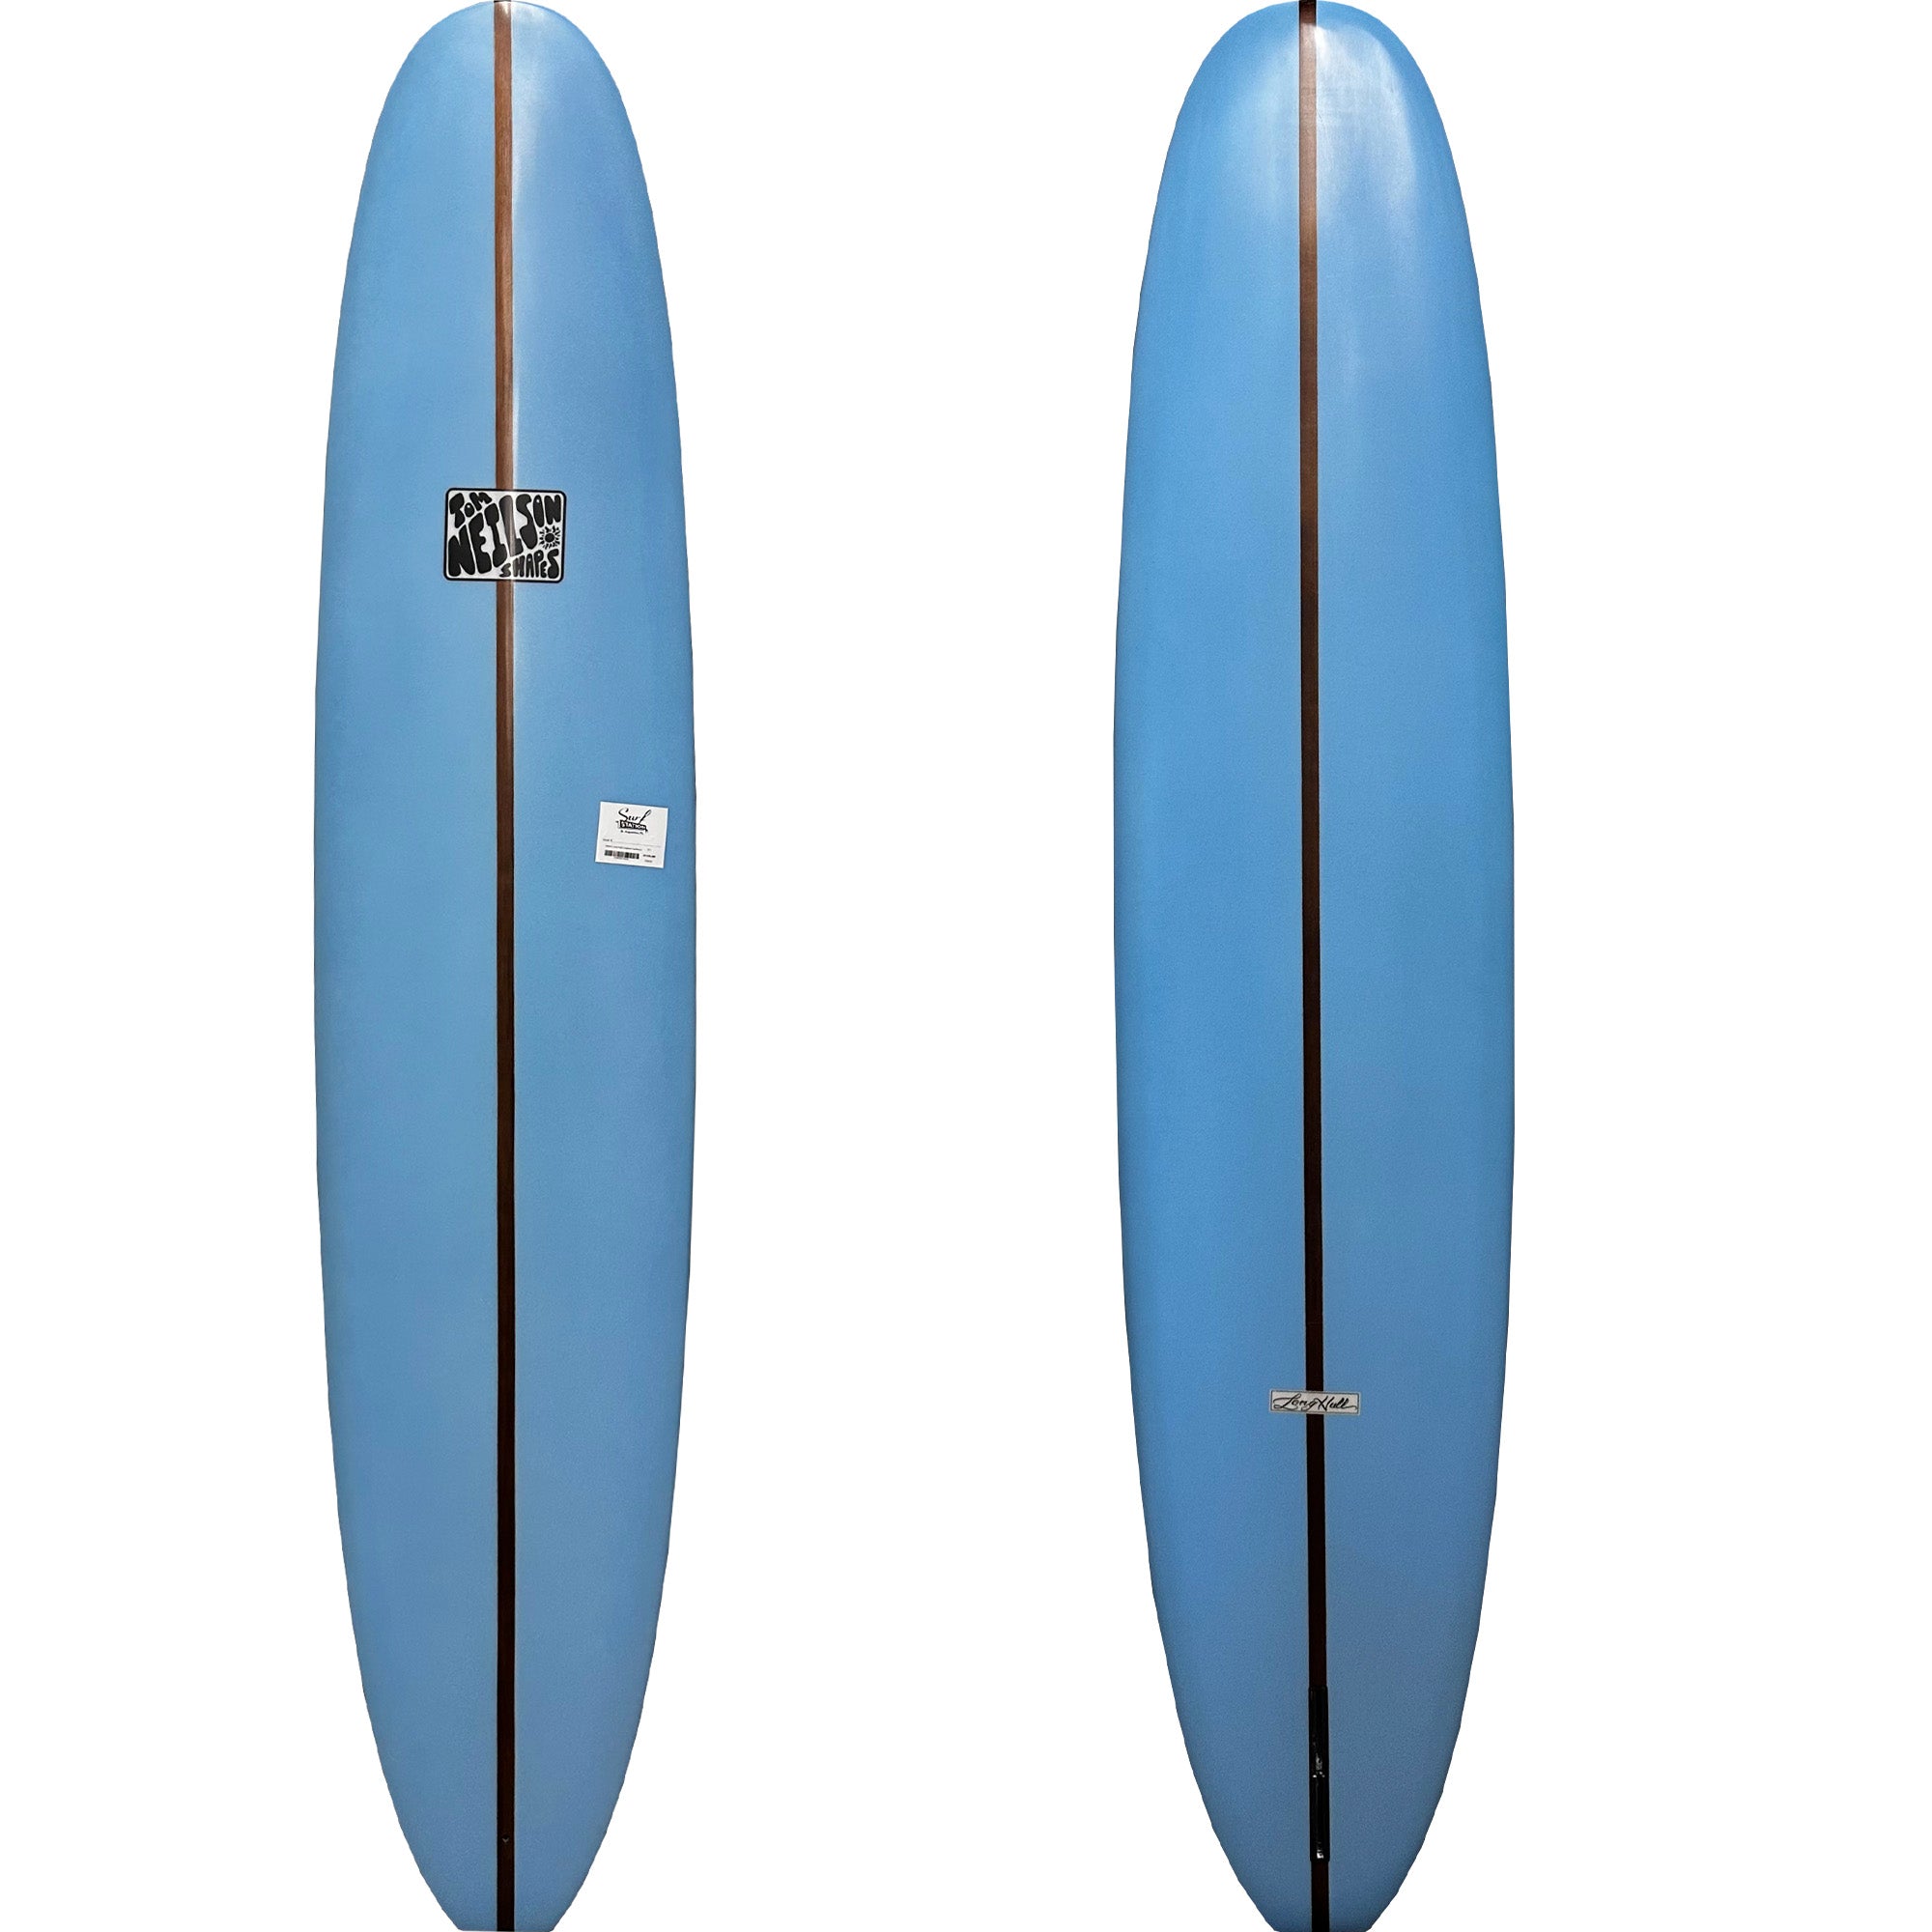 Neilson Long Hull Longboard Surfboard